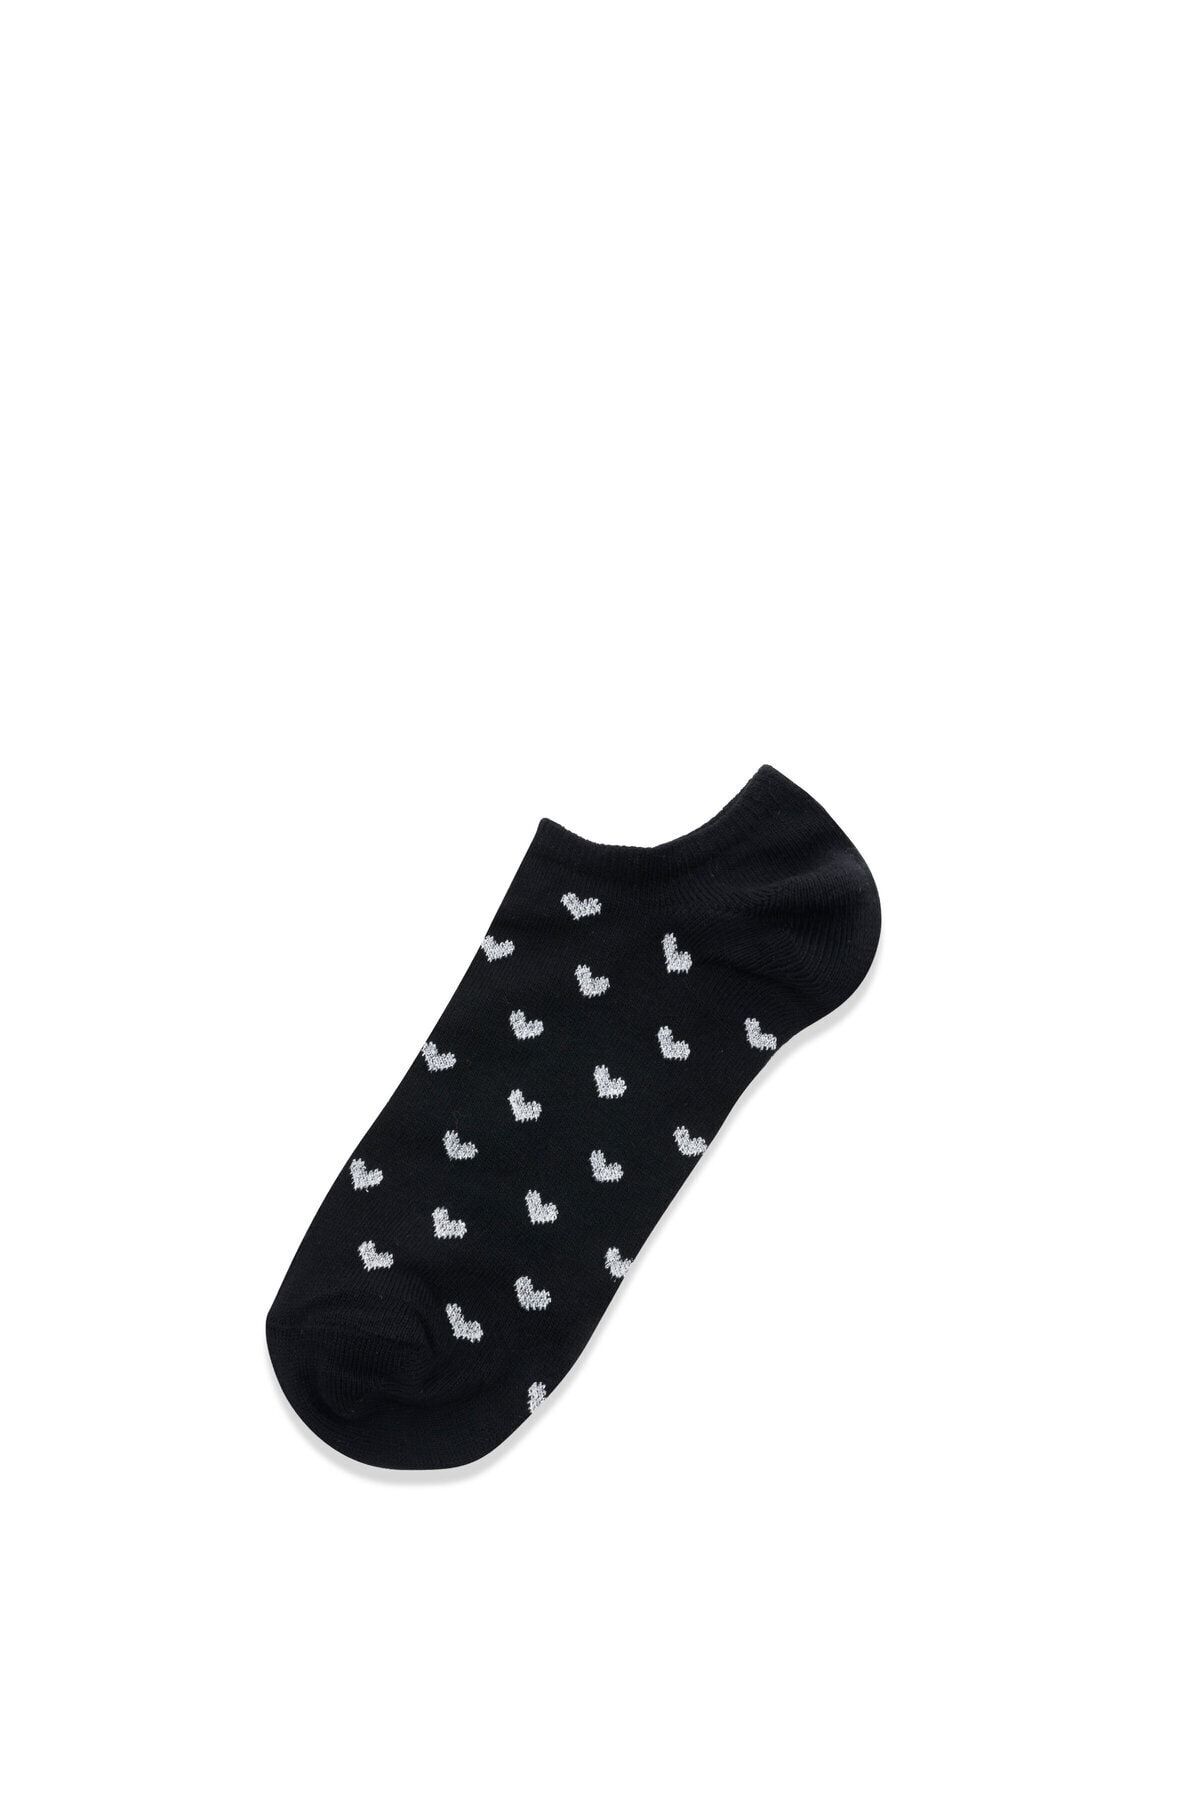 Colin’s Babet Baskılı Siyah Kadın Çorap